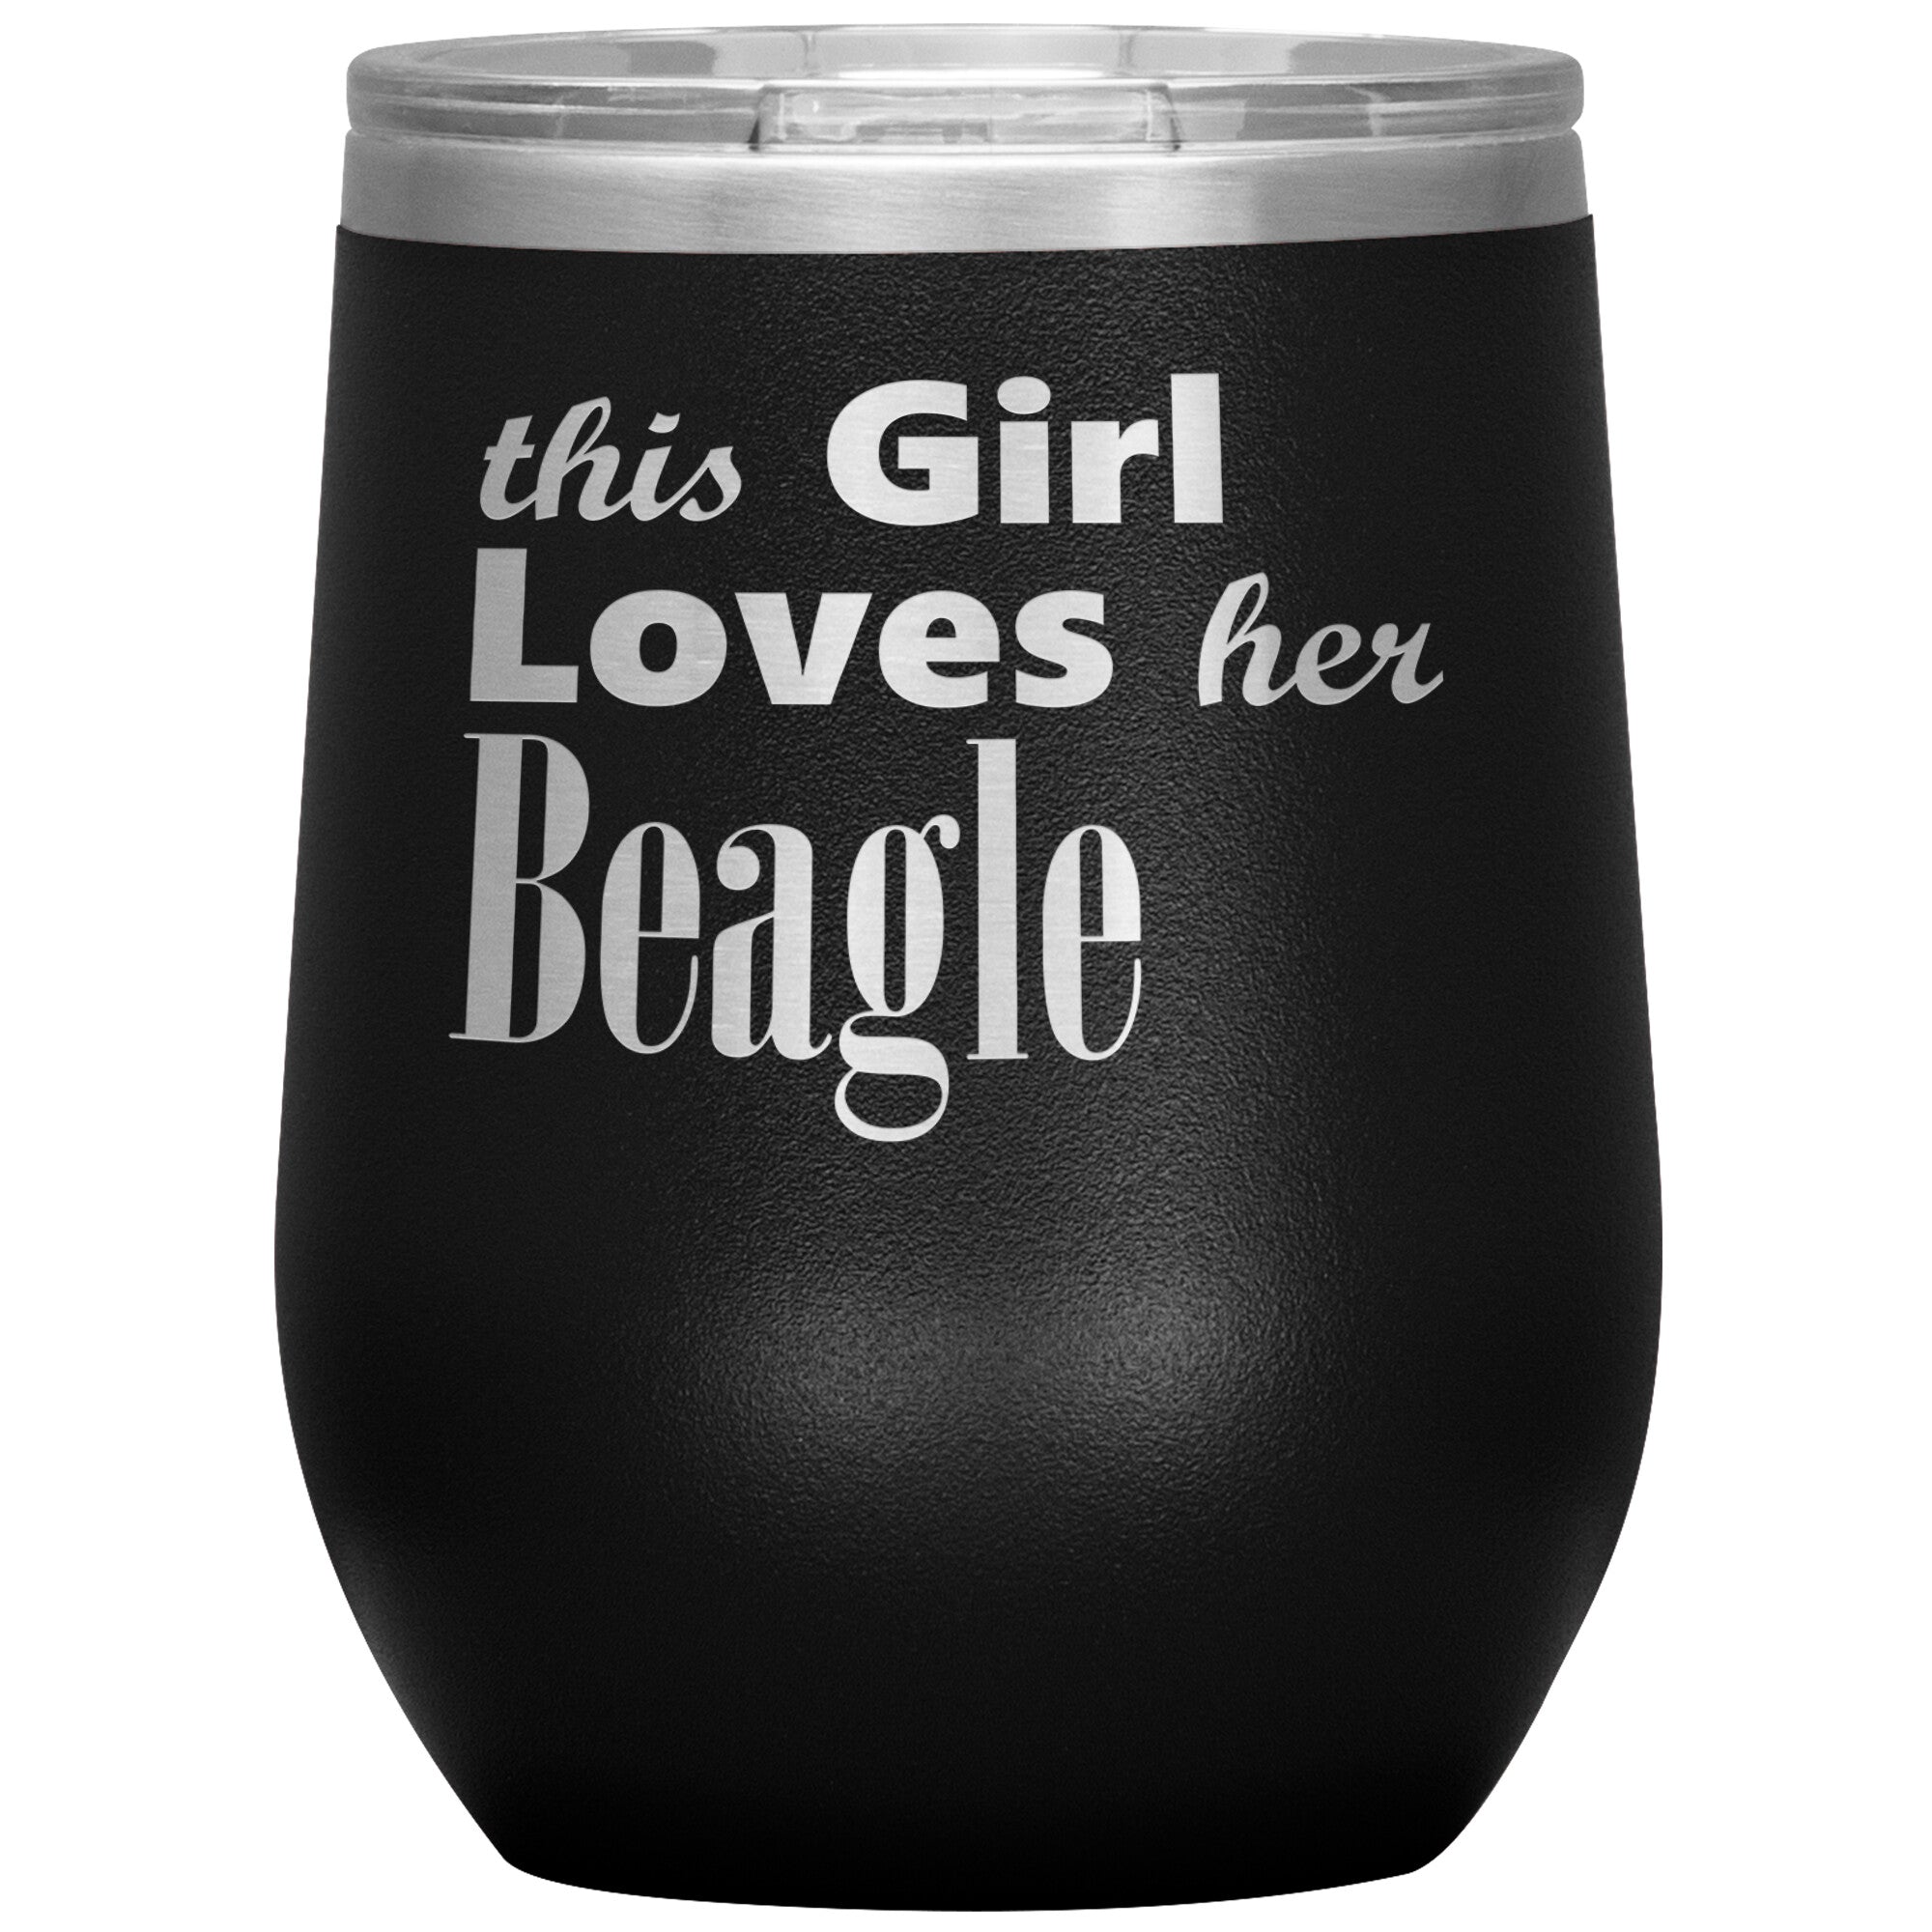 Beagle - 12oz Insulated Wine Tumbler